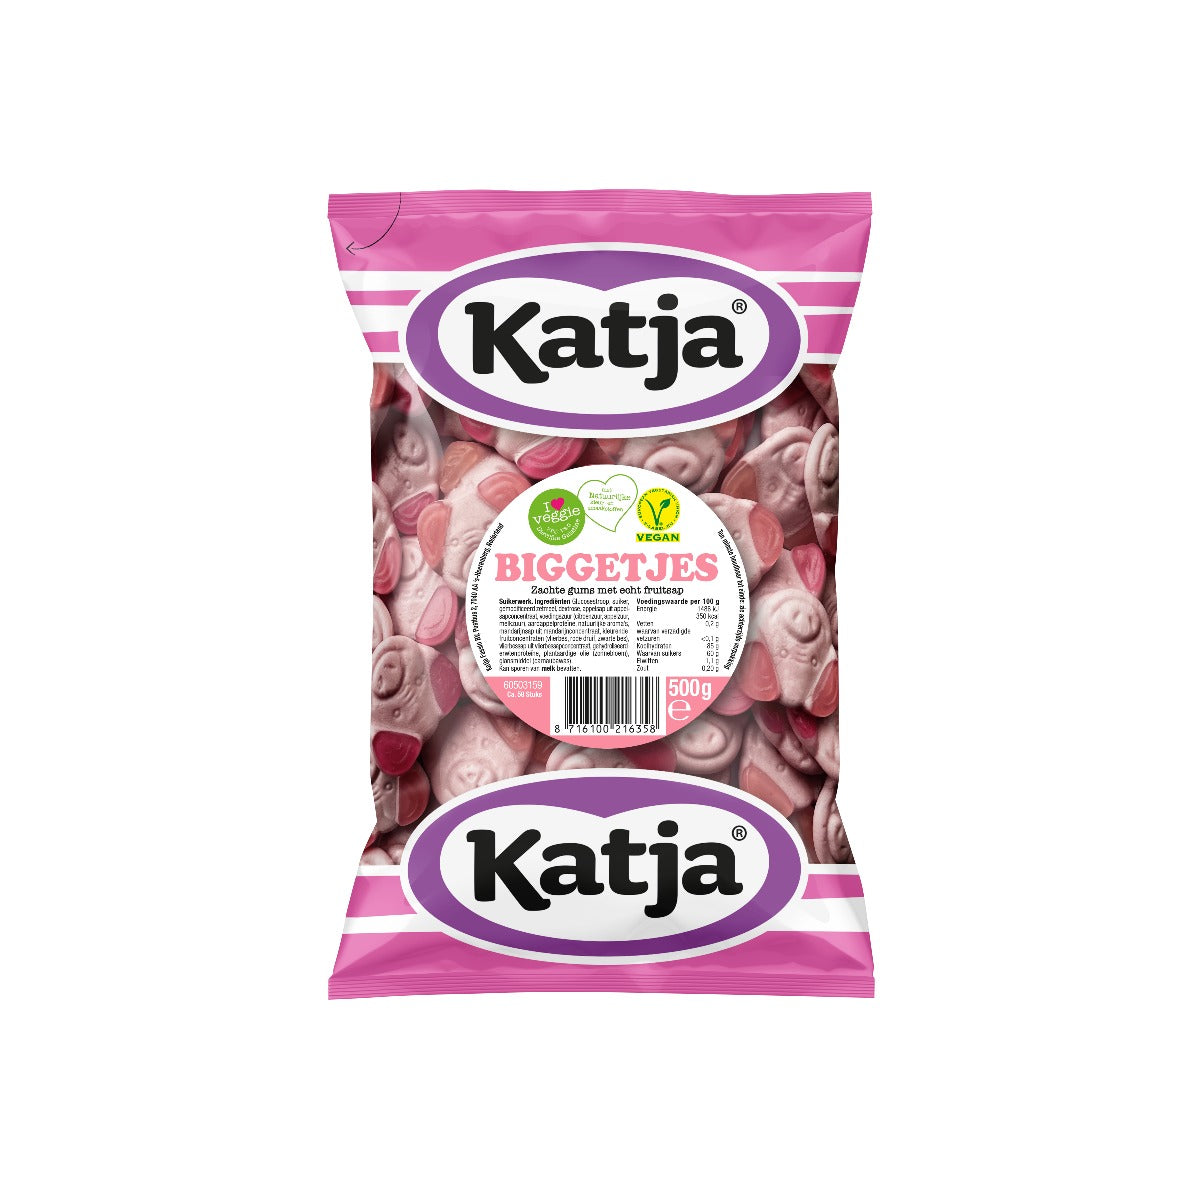 Biggetjes 500 gram (Vegan) - Katja